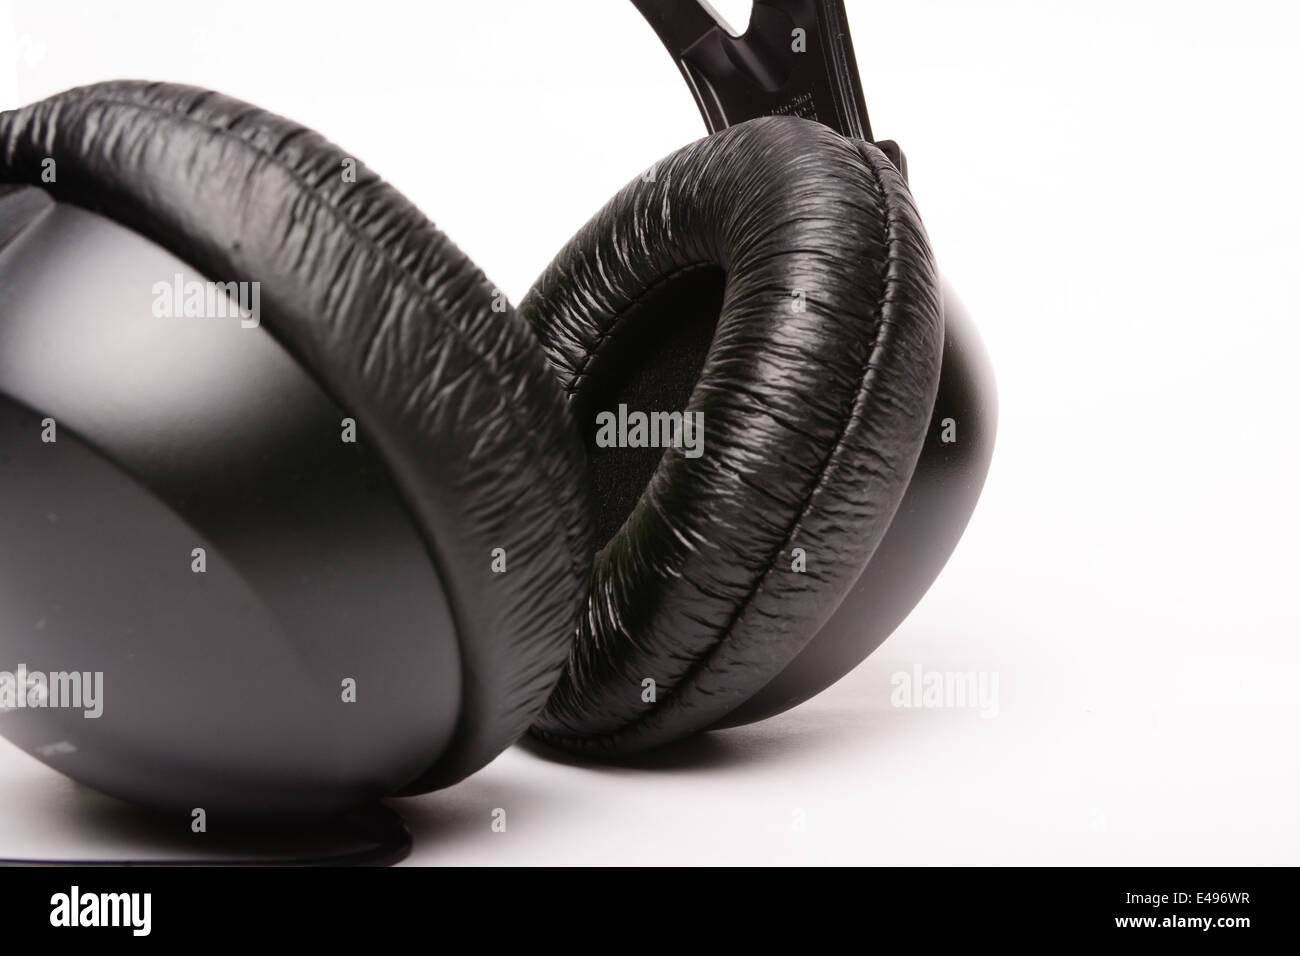 A pair of Philips headphones Stock Photo - Alamy